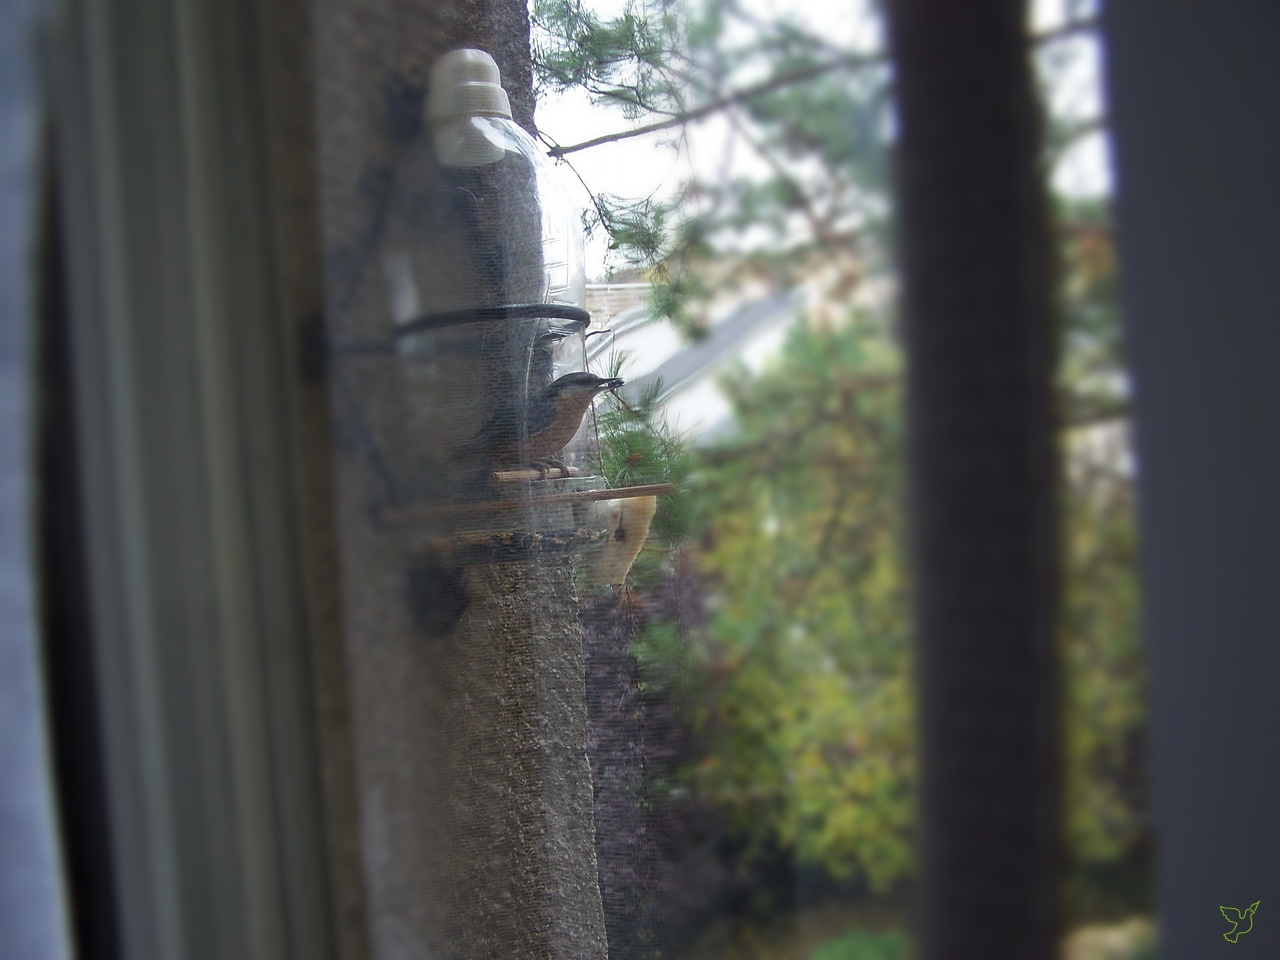 madarak, etető az ablakban